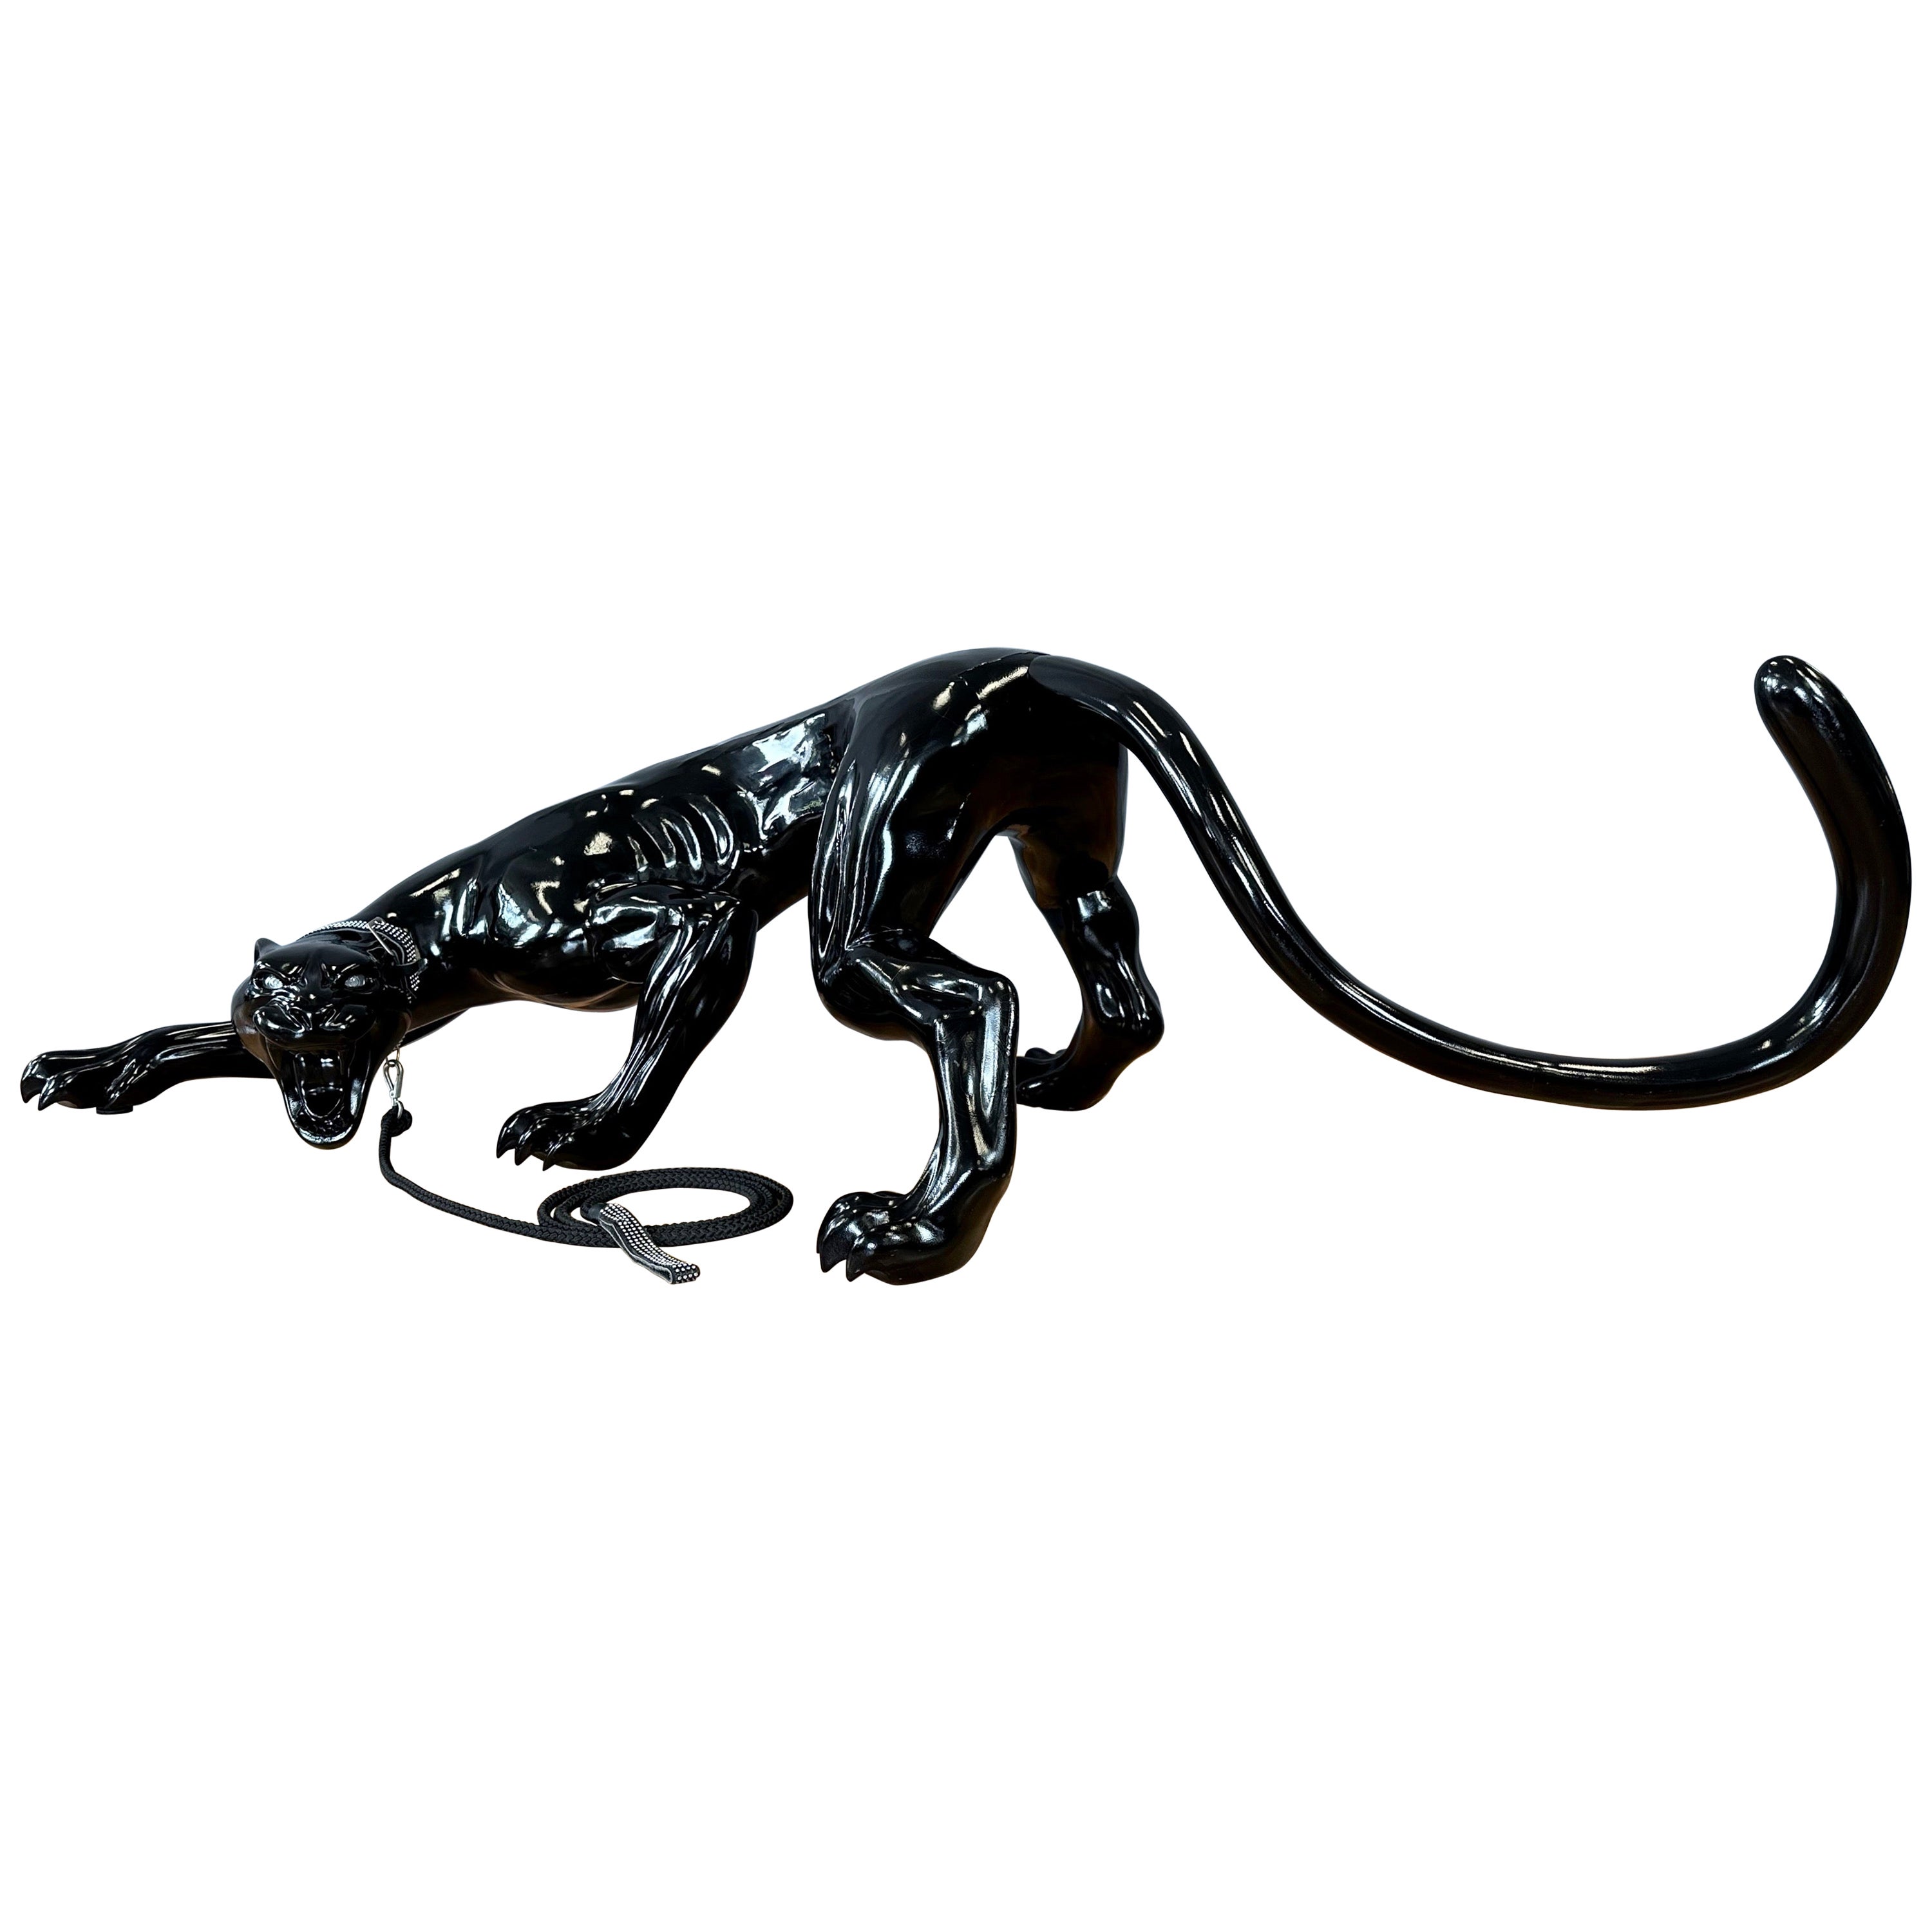 Sculpture grandeur nature de la Panthère noire, pièce d'exposition personnalisée de la boutique Gucci, vers 2005